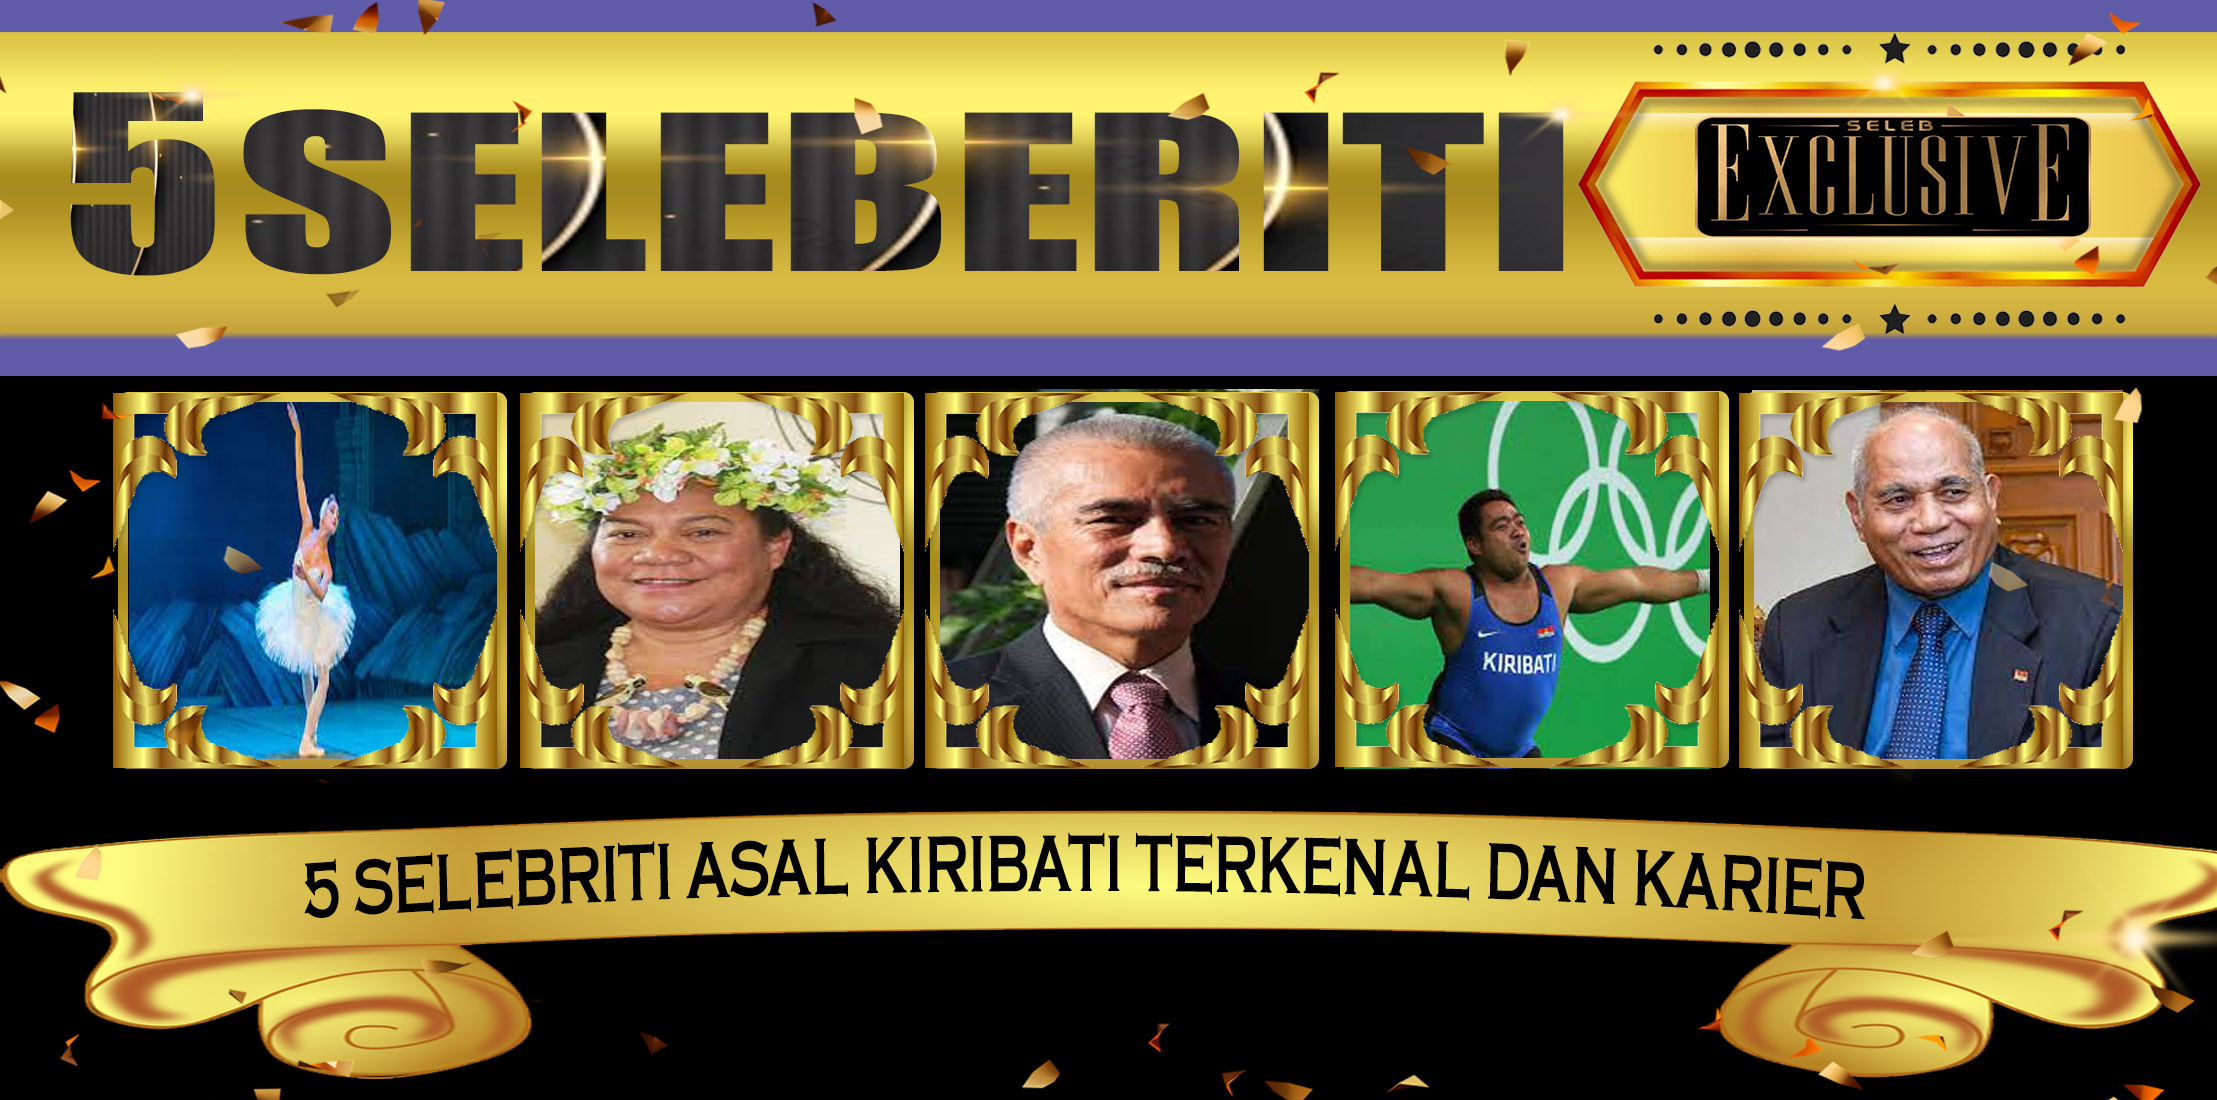 5 Selebriti Asal Kiribati